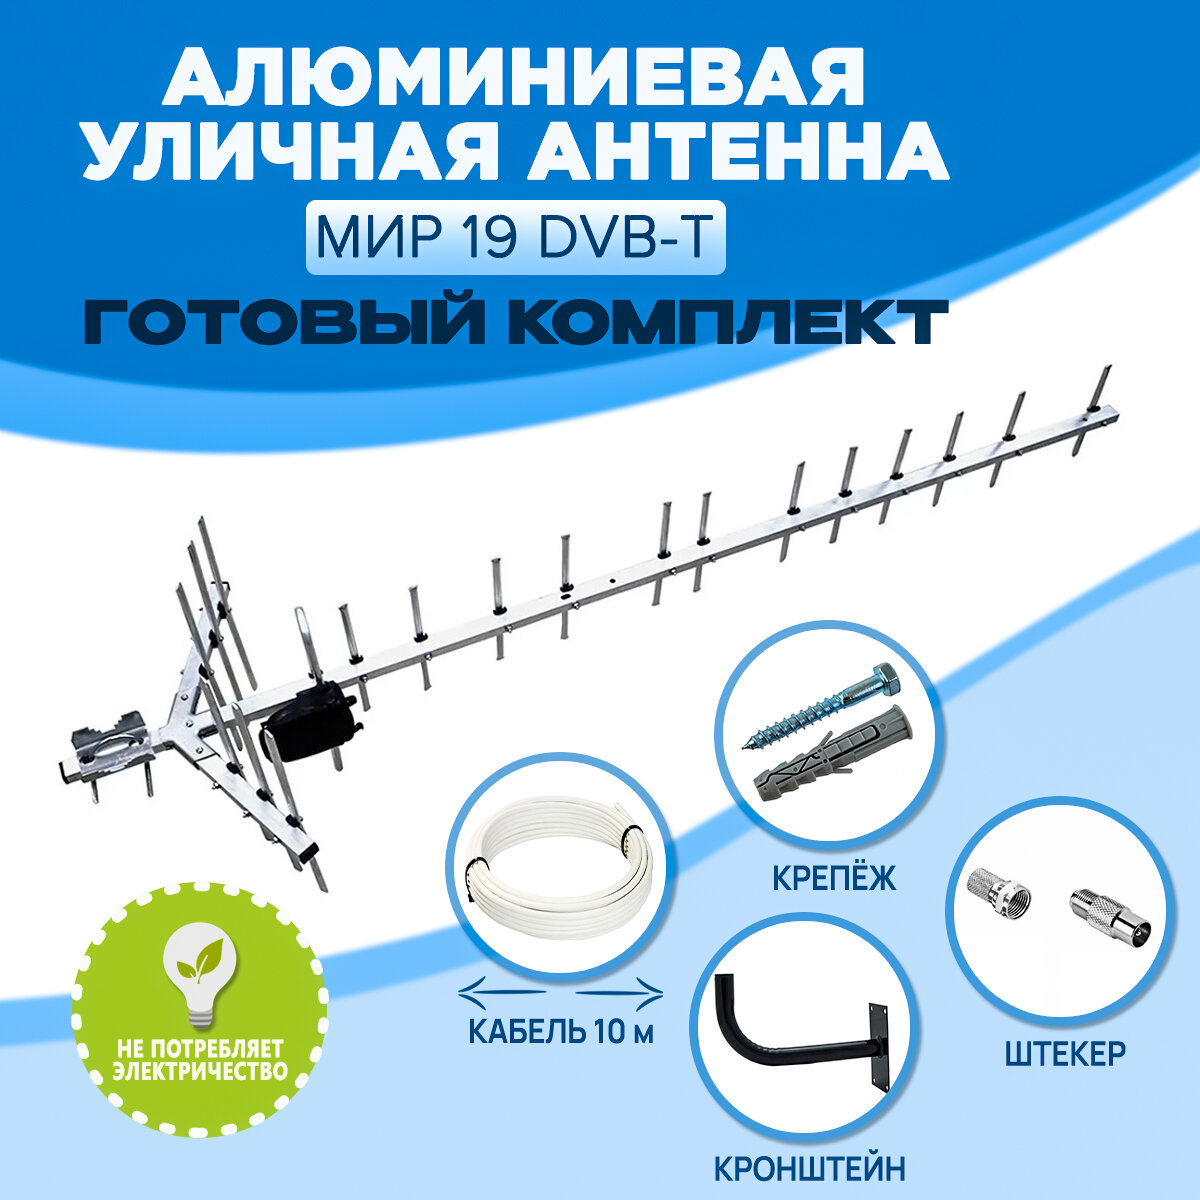 Комплект Уличная телевизионная антенна MIR 19M DVB-T для цифрового ТВ, направленная, до 70 км, с кабелем 10 метров, кронштейном и штекером